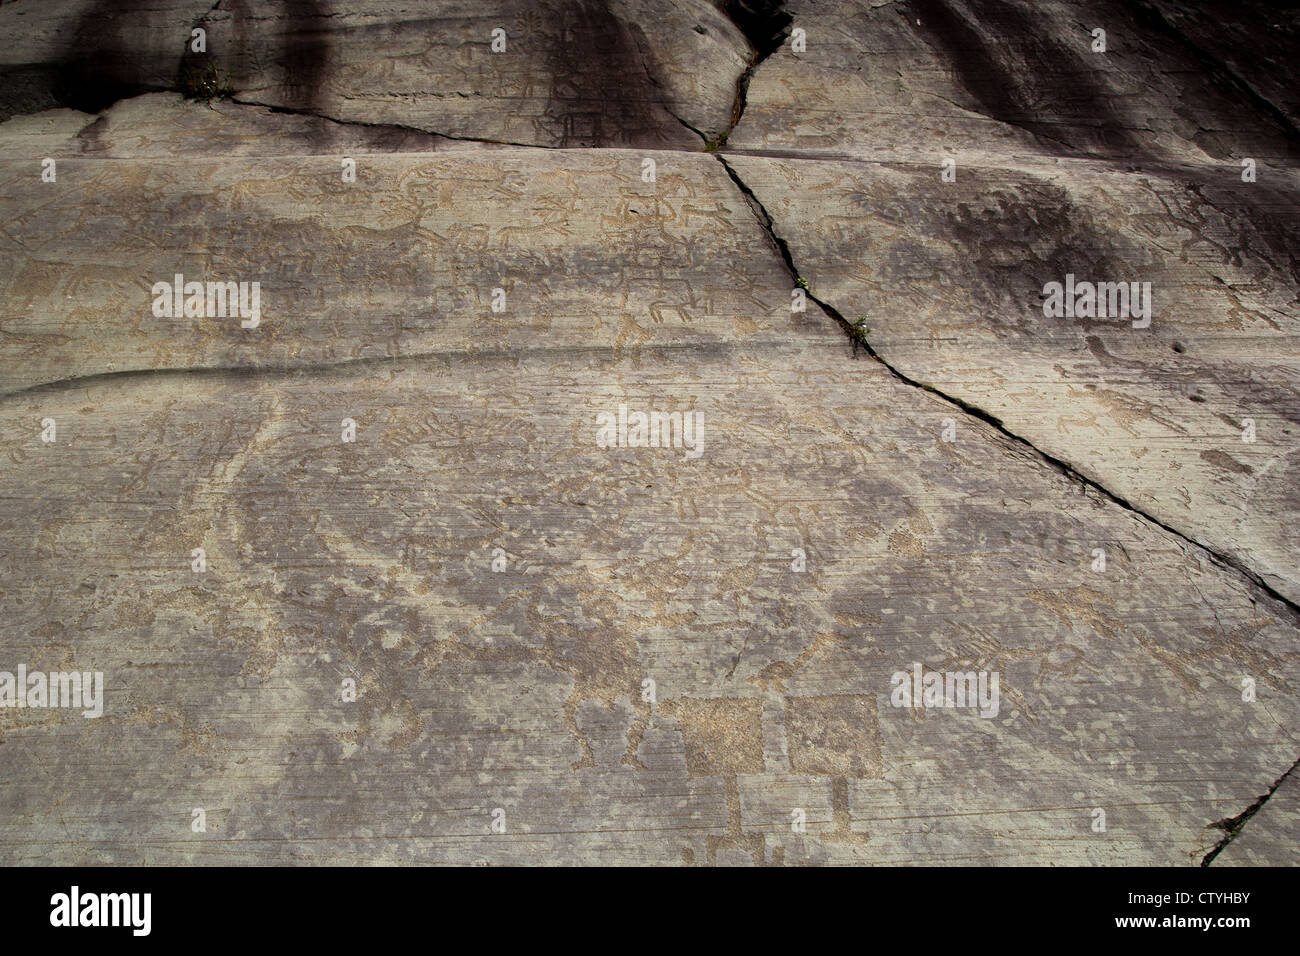 Die Steinmetzarbeiten von Val Camonica, Italien bilden eine der größten Sammlungen von prähistorischen Petroglyphen in der Welt Stockfoto